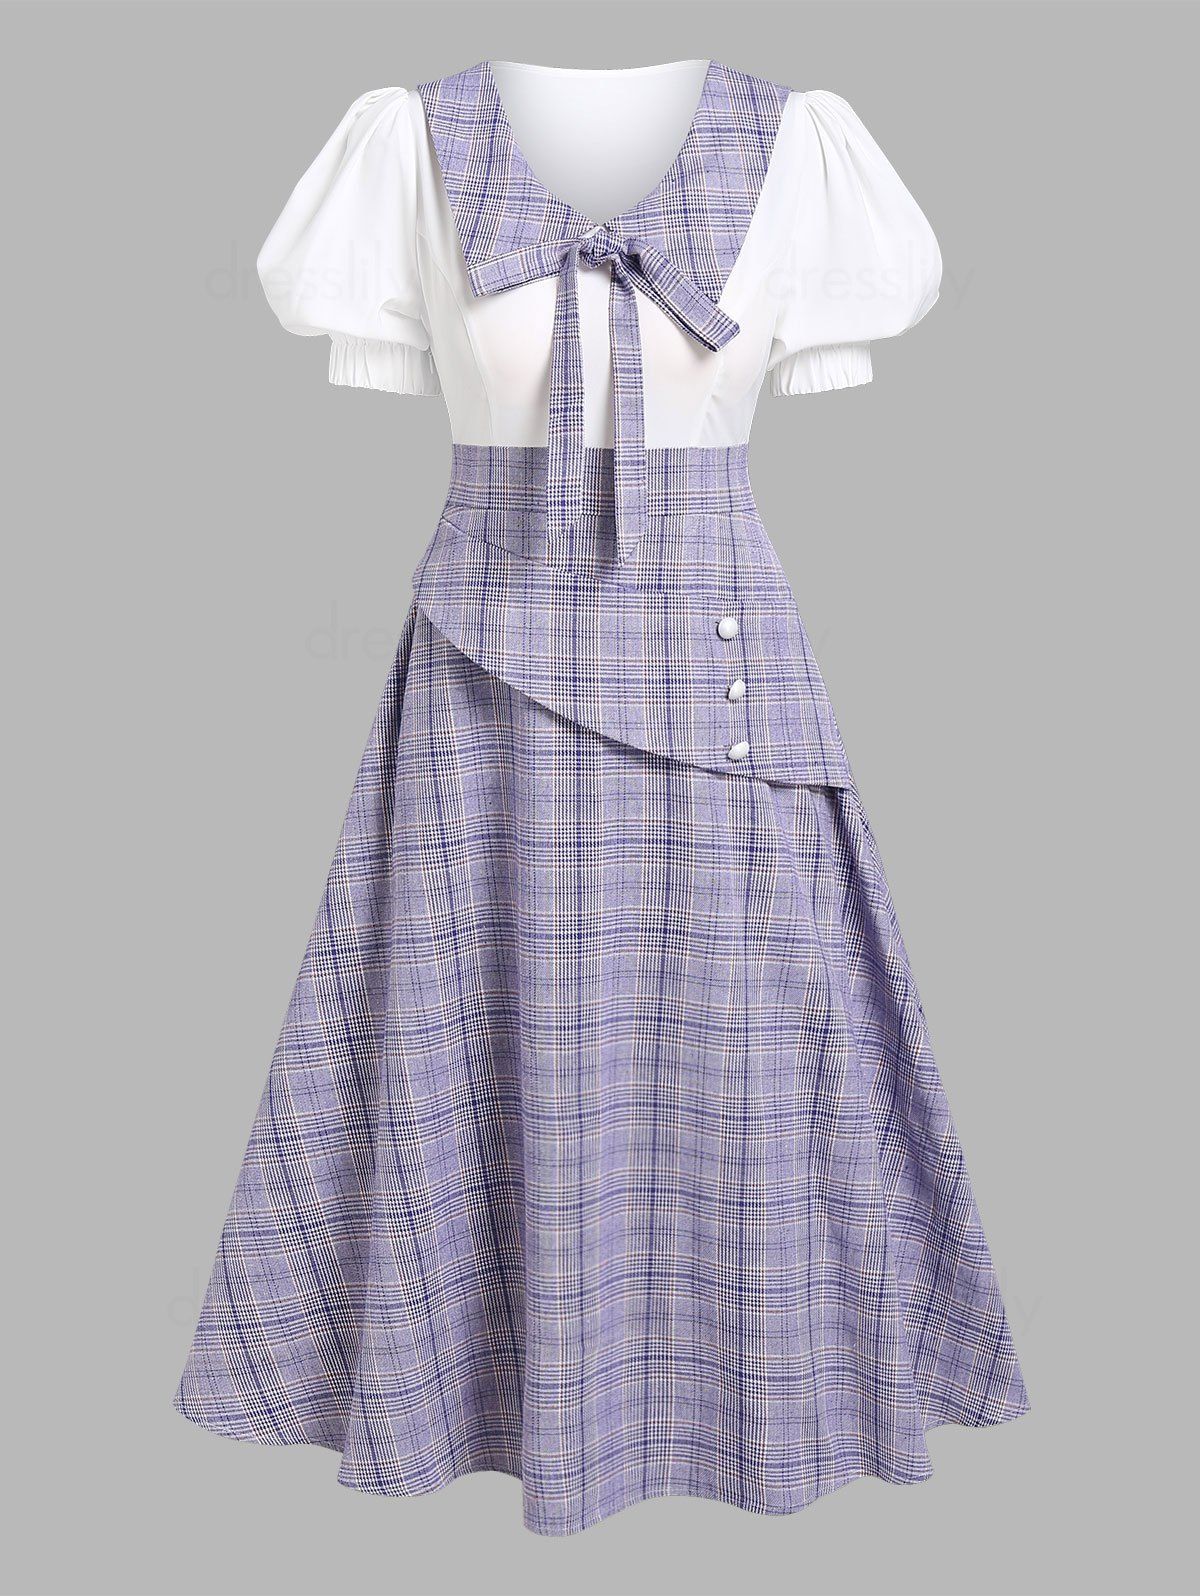 Vintage Dress Plaid Print Midi Dress Bowknot Puff Sleeve Dress Mock Button A Line Dress - LIGHT PURPLE XXXL